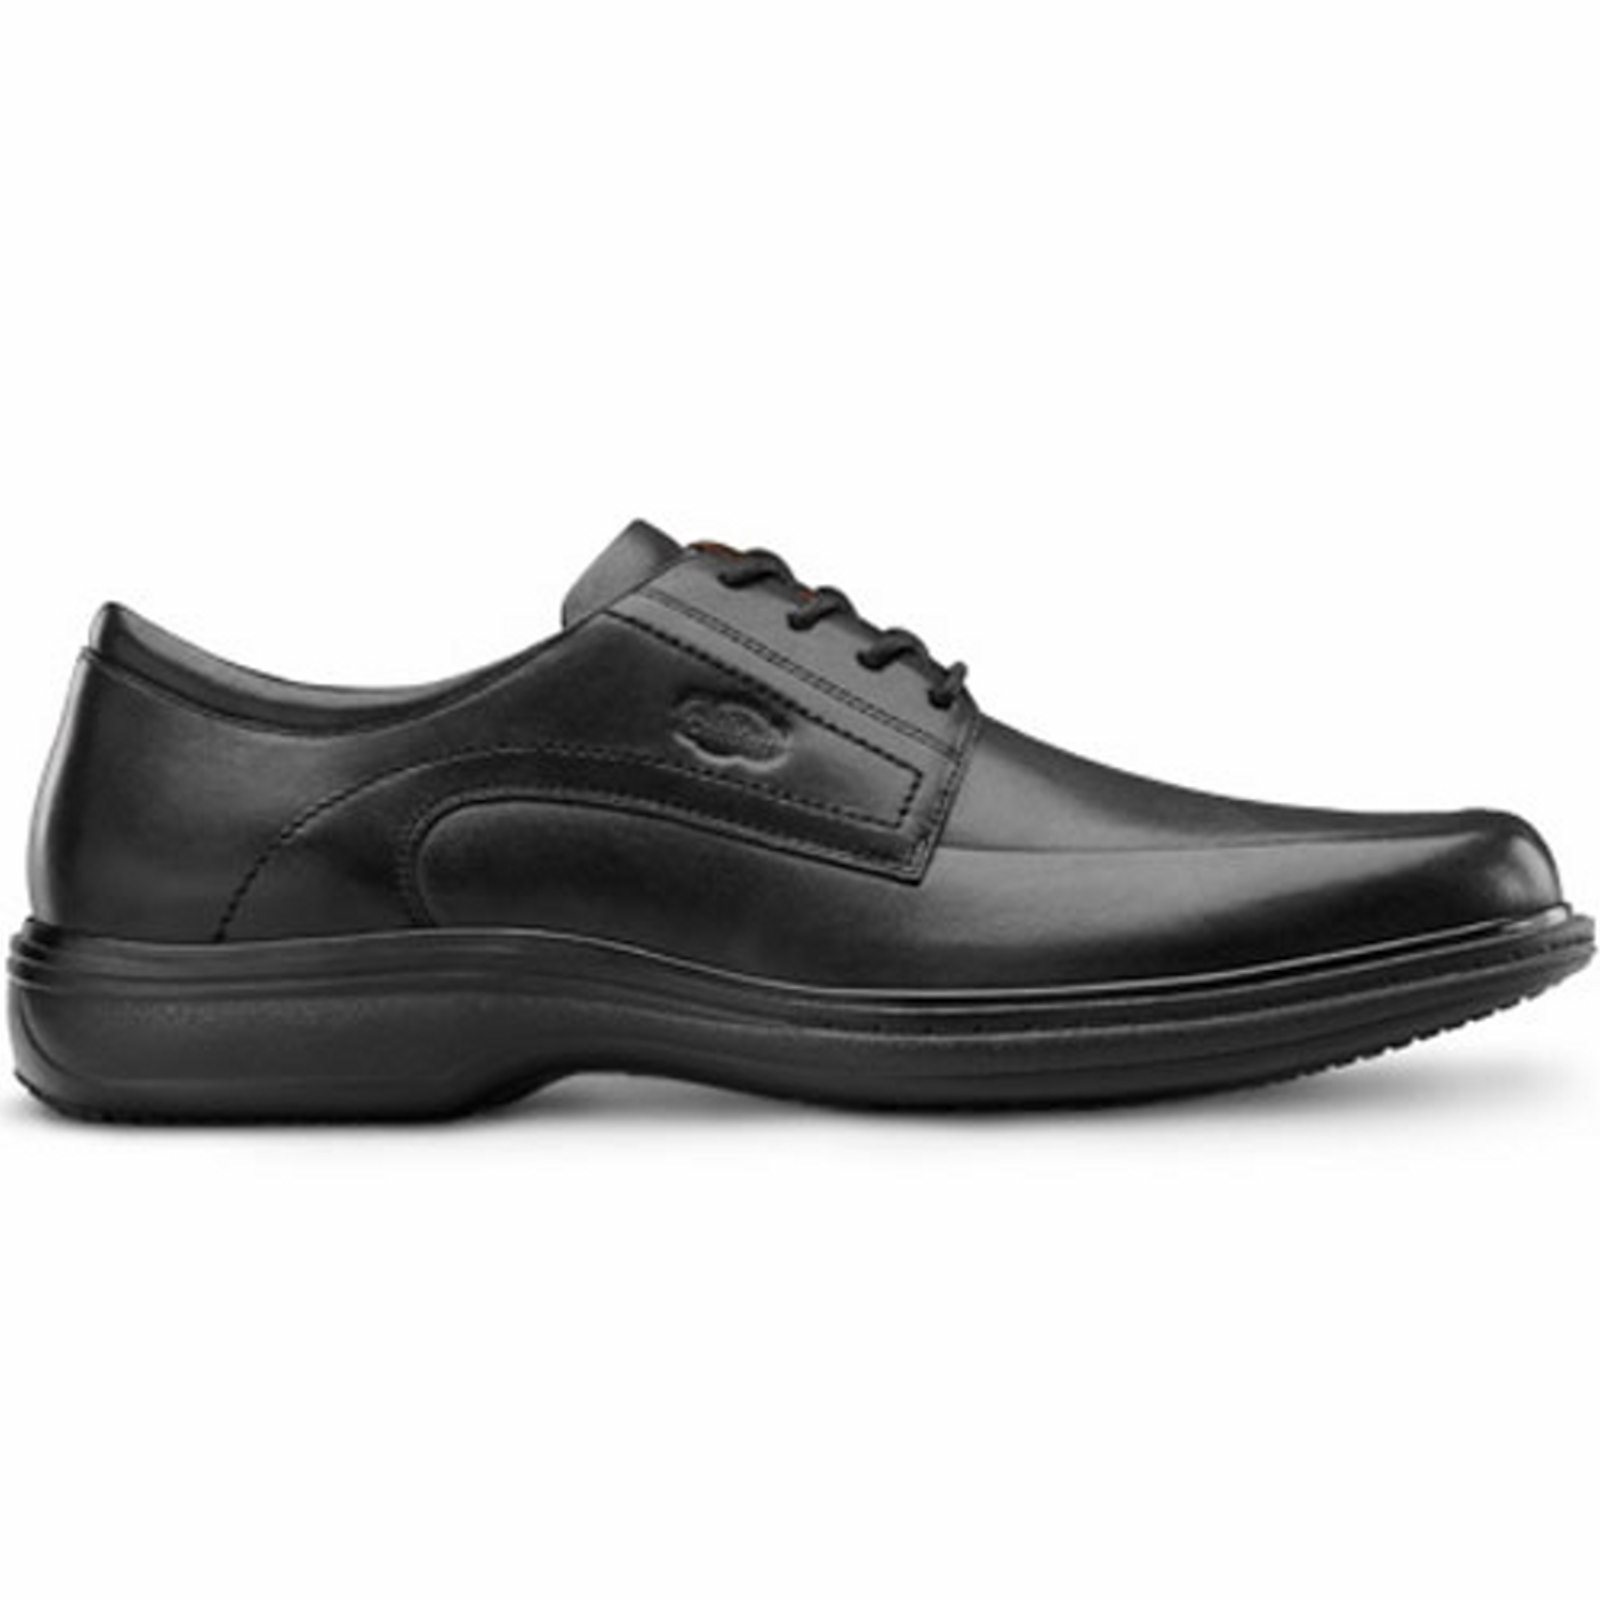 Dr. Comfort Classic Men's Dress Shoe: 9.5 Wide (E/2E) Black Lace - image 4 of 5